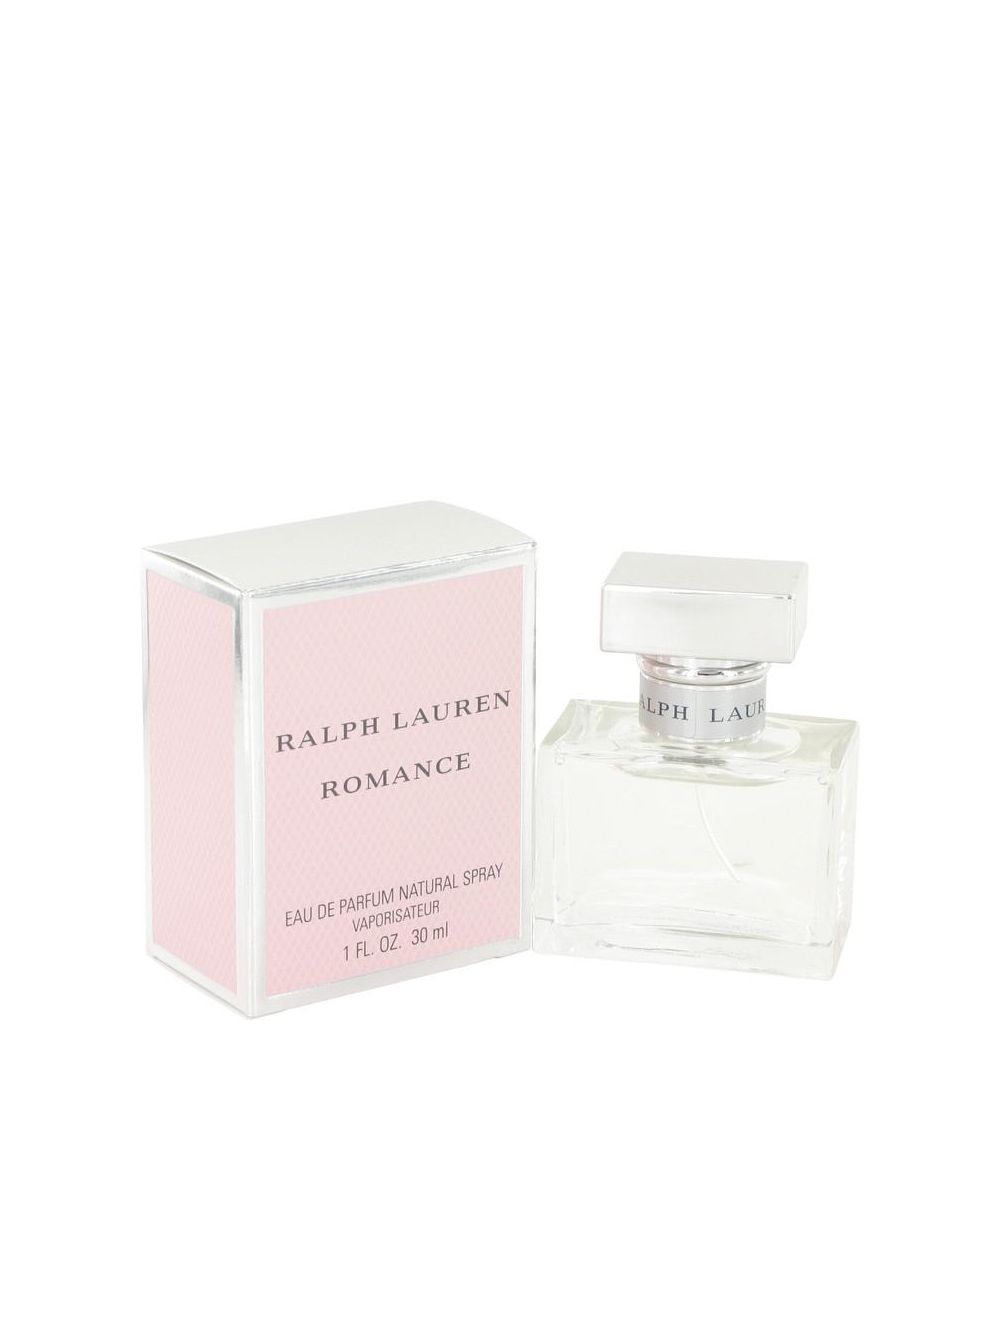 Canada Online Perfumes Shop, Buy Fragrances Romance par Ralph Lauren Eau  de Parfum Spray 1 oz (Femme) 30ml